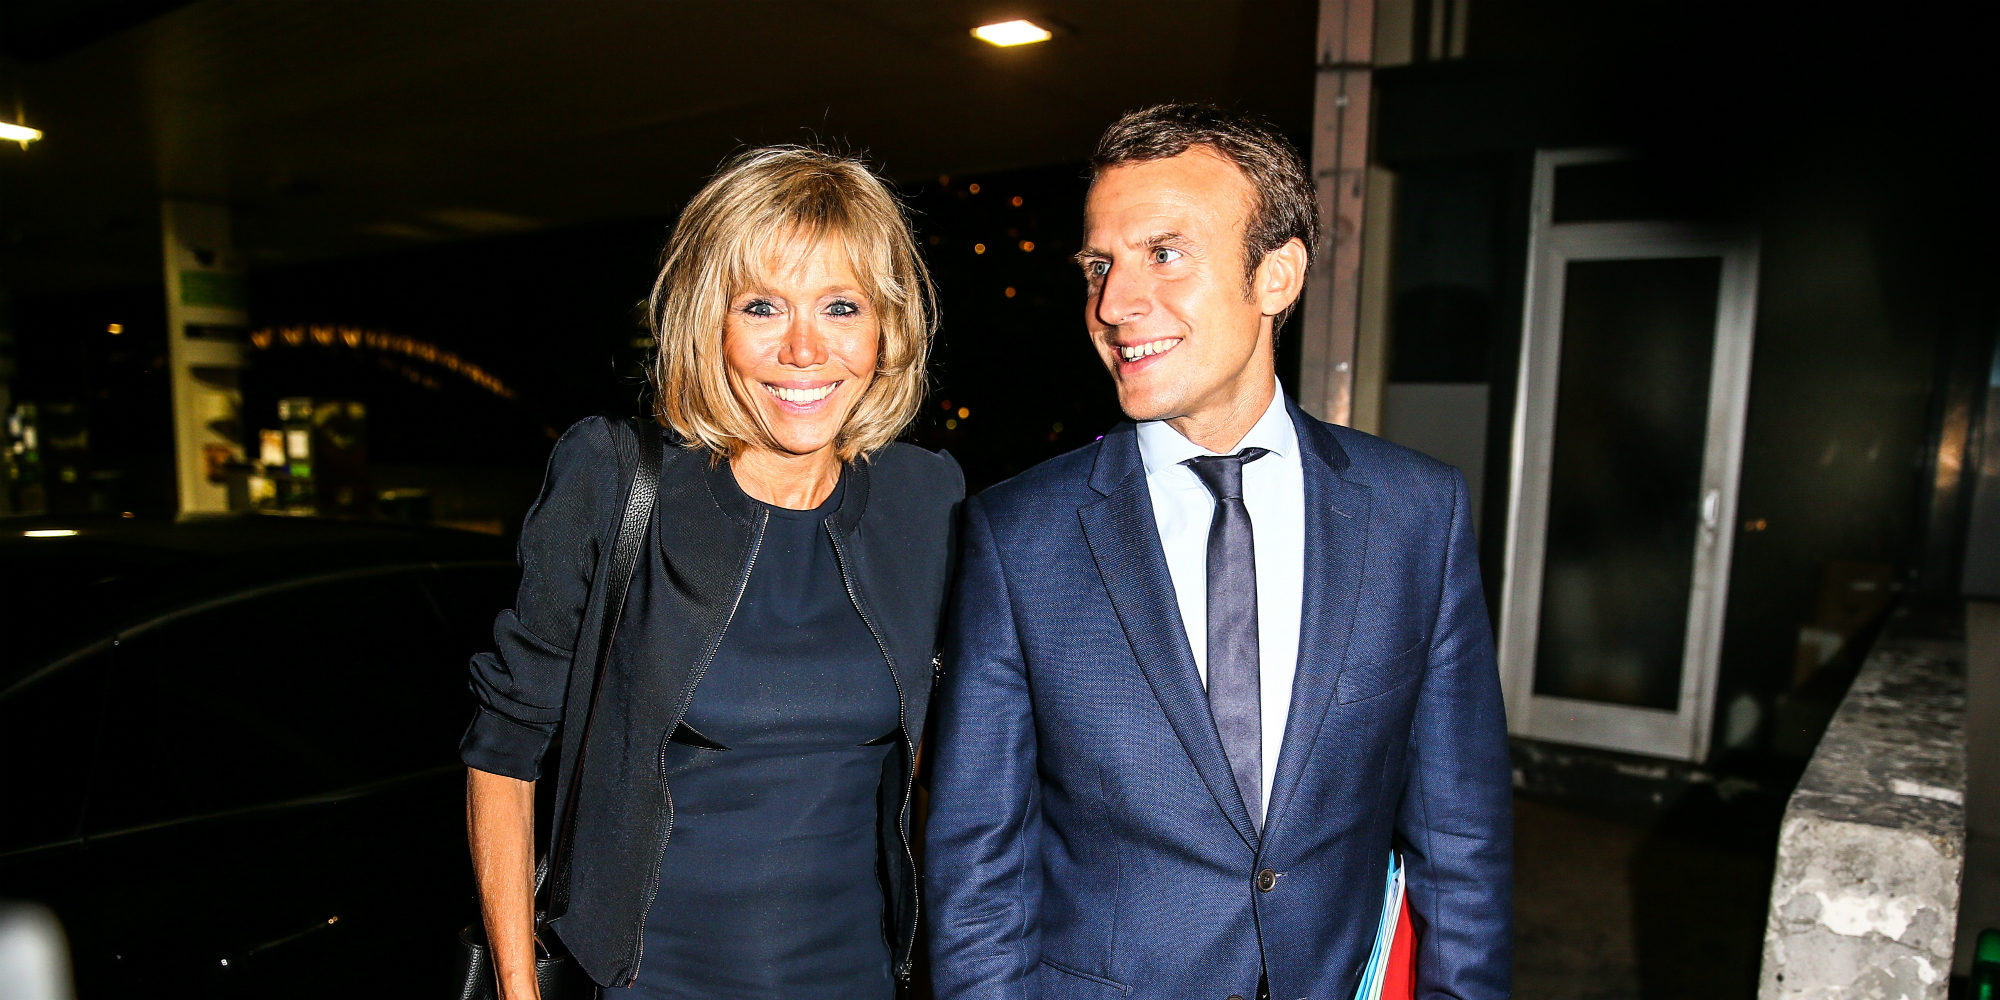 Emmanuel Macron, el político francés que enamoró a su profesora del instituto 24 años mayor que él